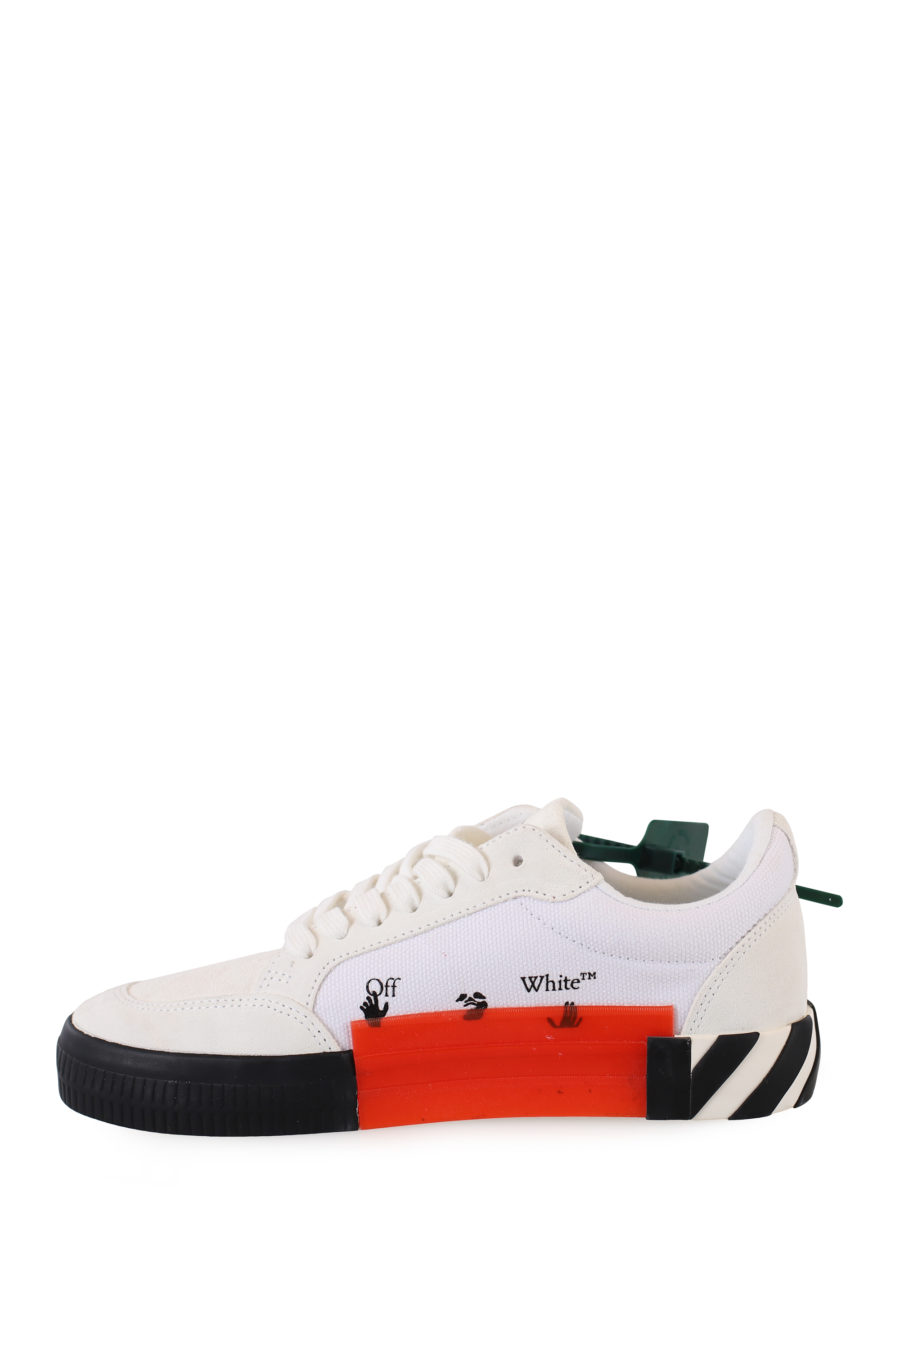 Weiße "vulkanisierte" Schuhe mit roten Pfeilen - IMG 2253